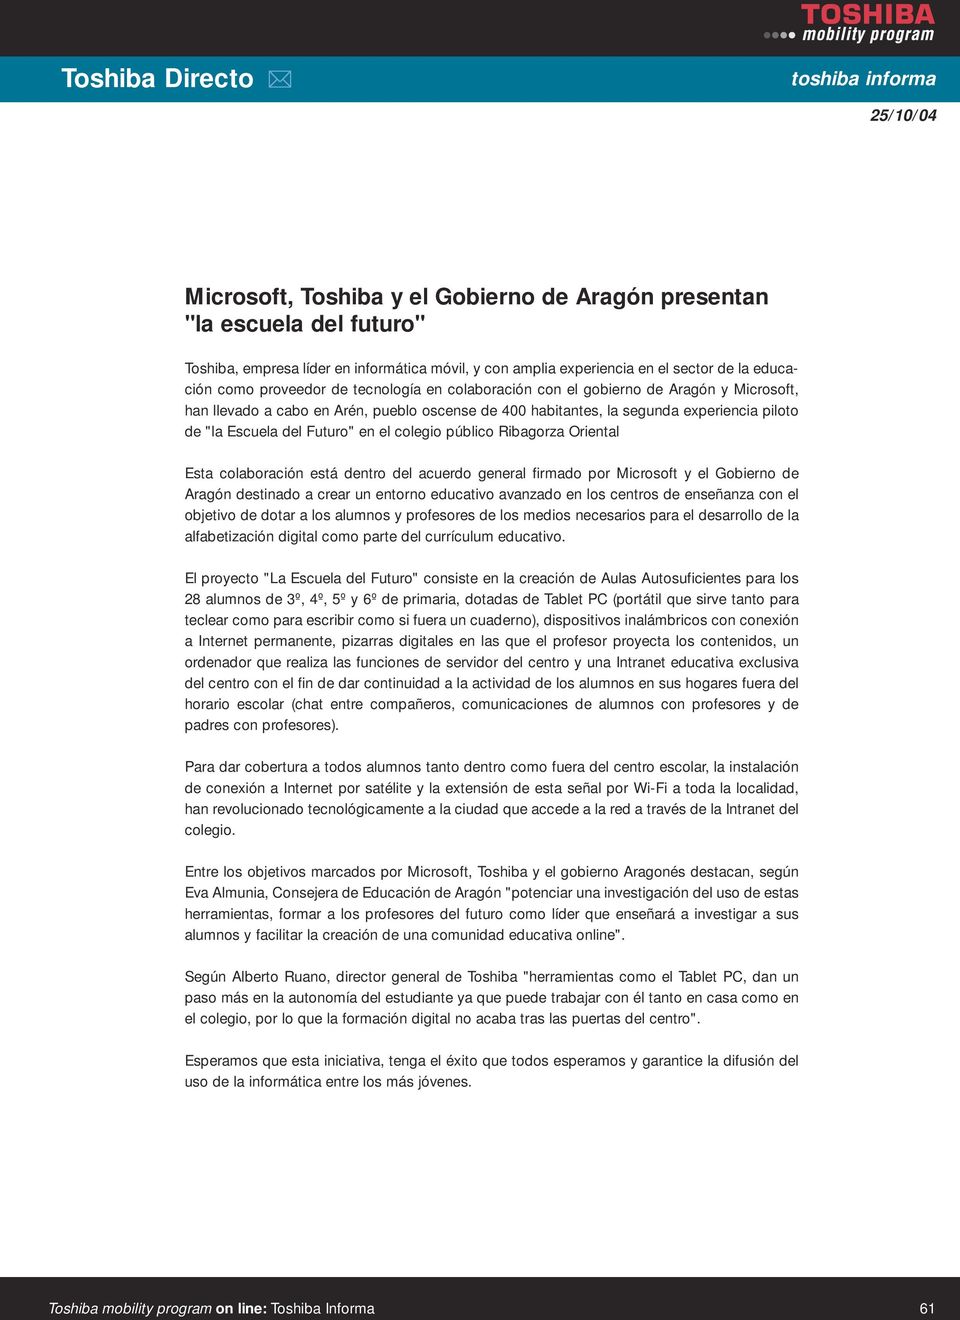 en el colegio público Ribagorza Oriental Esta colaboración está dentro del acuerdo general firmado por Microsoft y el Gobierno de Aragón destinado a crear un entorno educativo avanzado en los centros